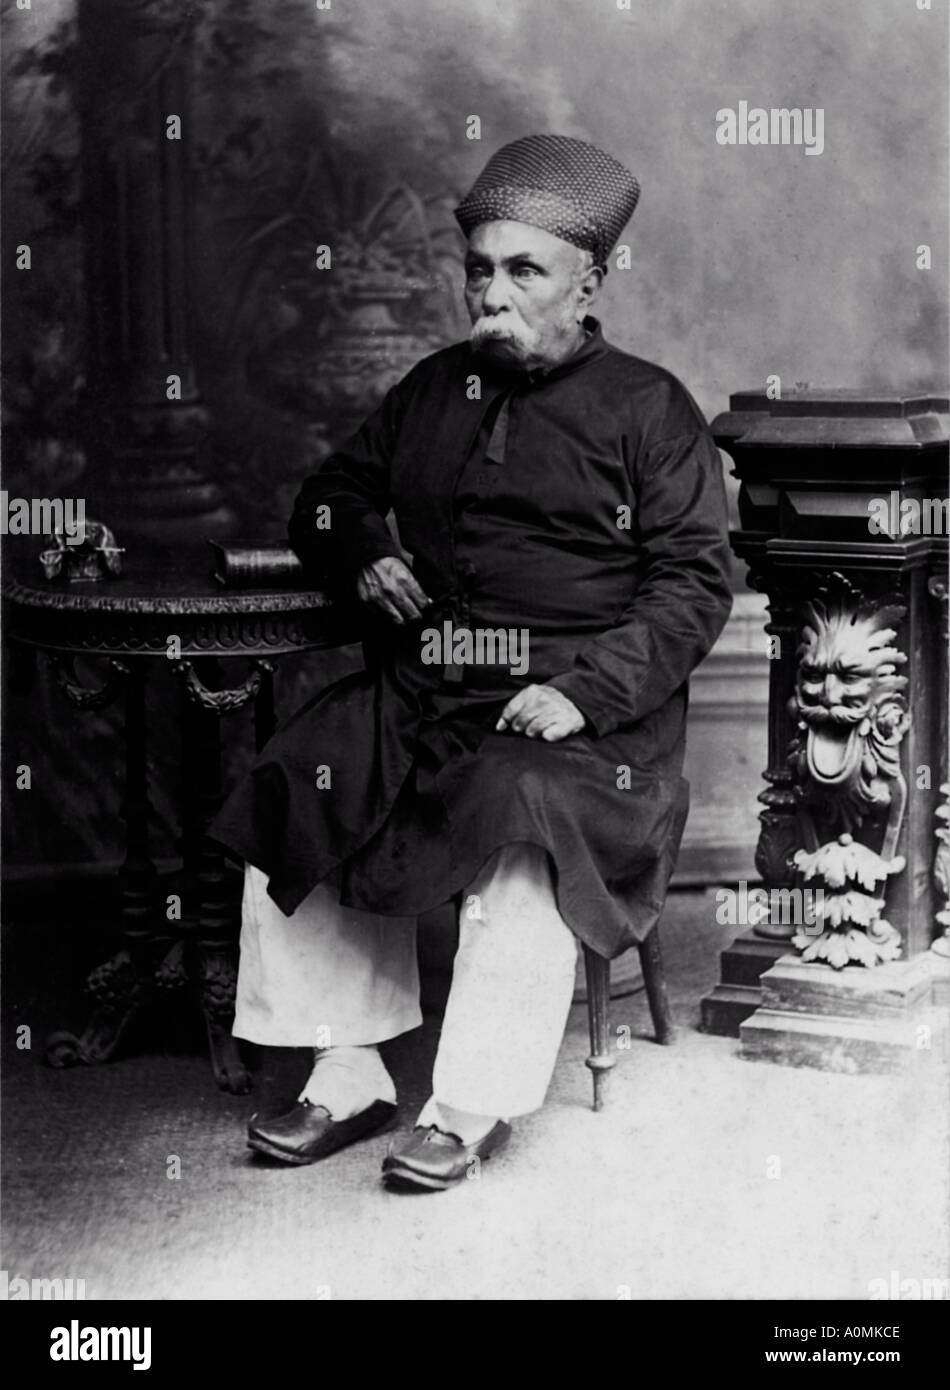 CMP 92051 ancienne photo d'un vieil homme habillé en costume avec piajama Parsi assis sur une chaise l'Inde Banque D'Images